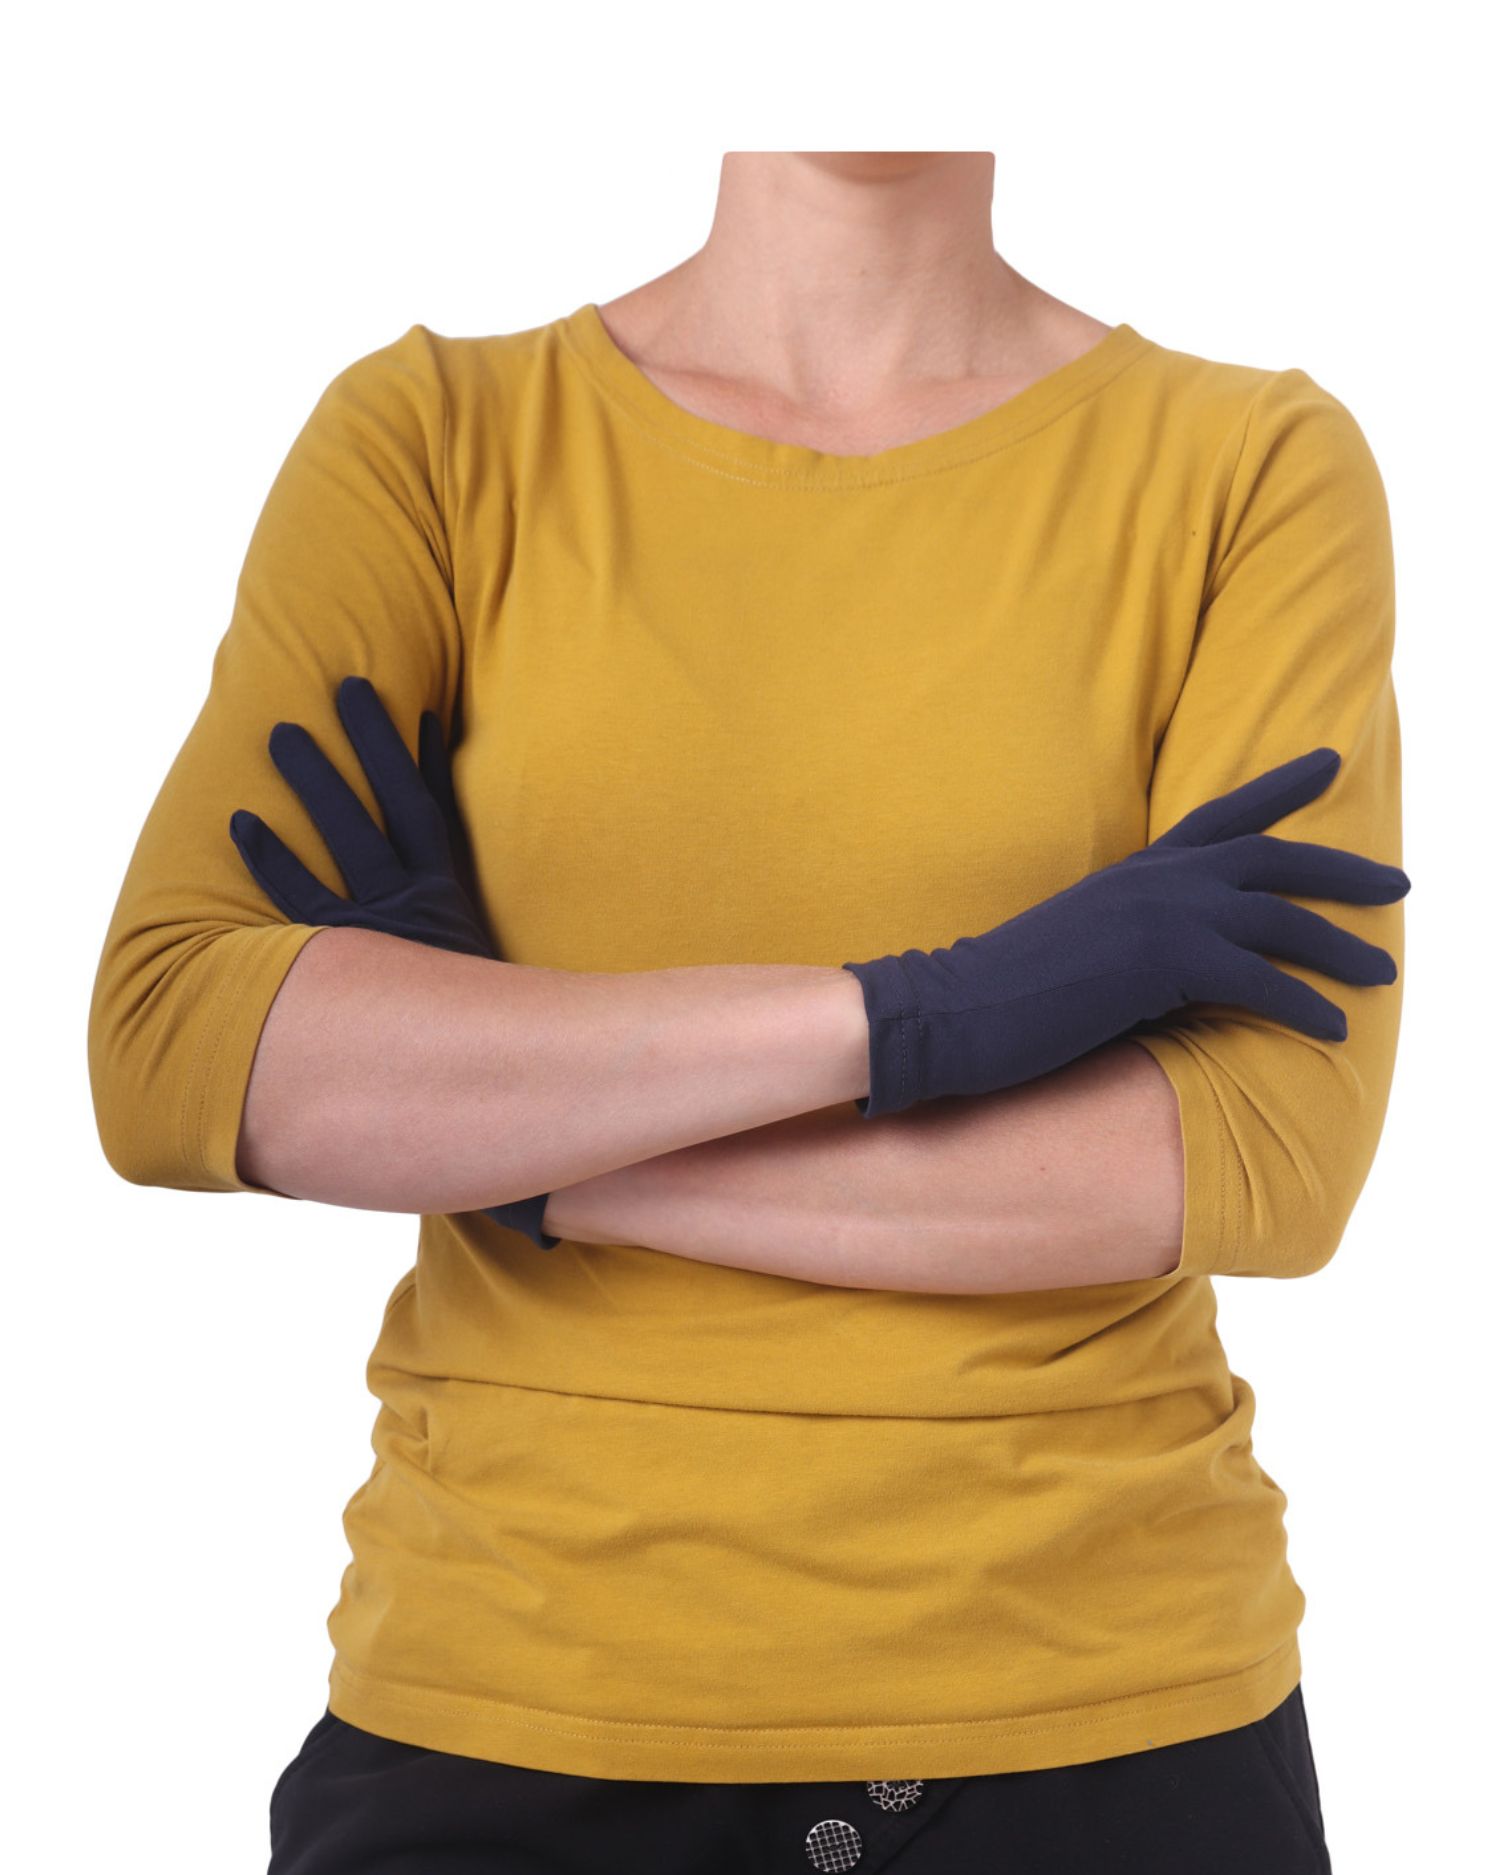 Cotton women´s gloves, dark blue